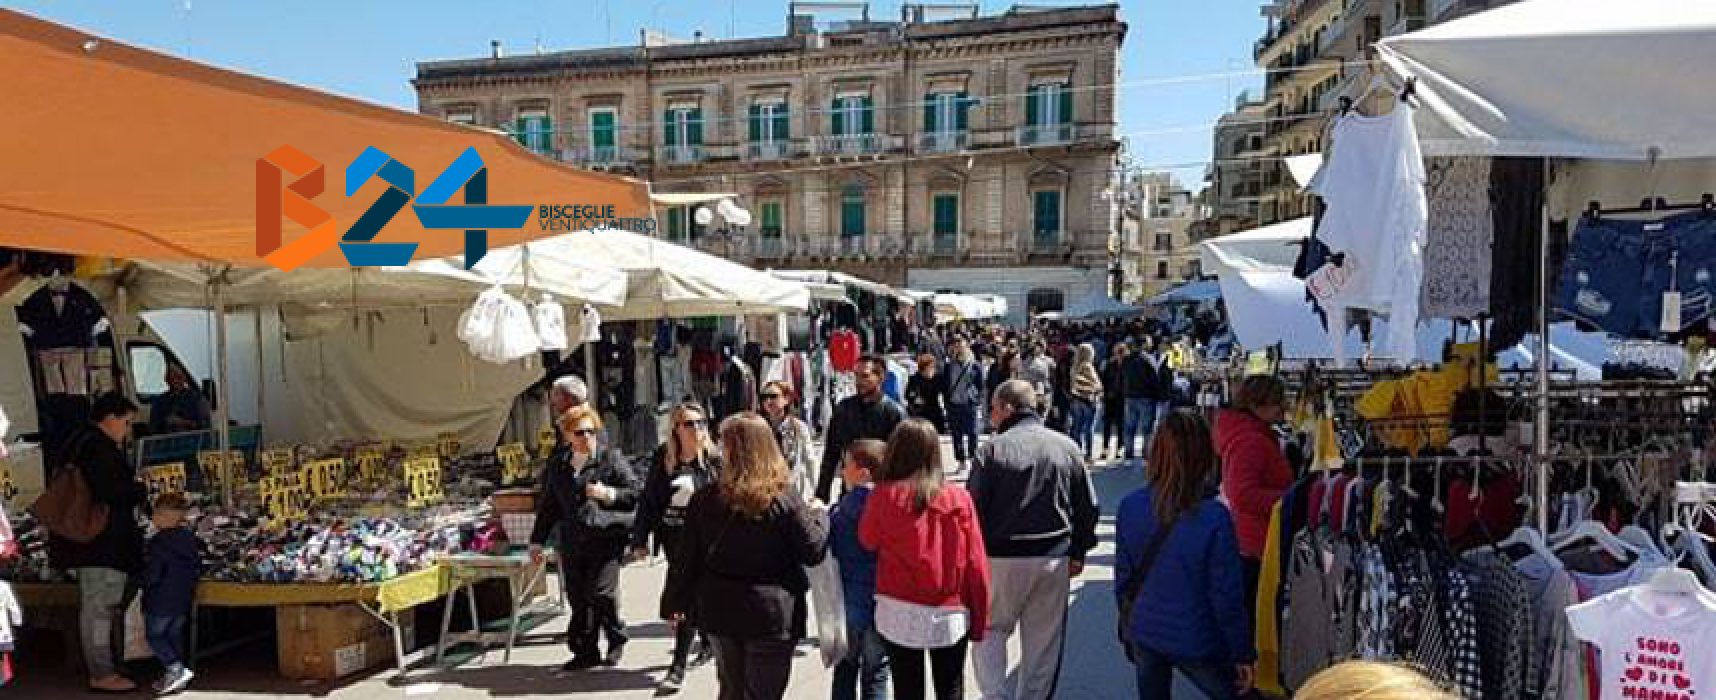 Mercato straordinario domenicale in piazza Vittorio Emanuele / DETTAGLI